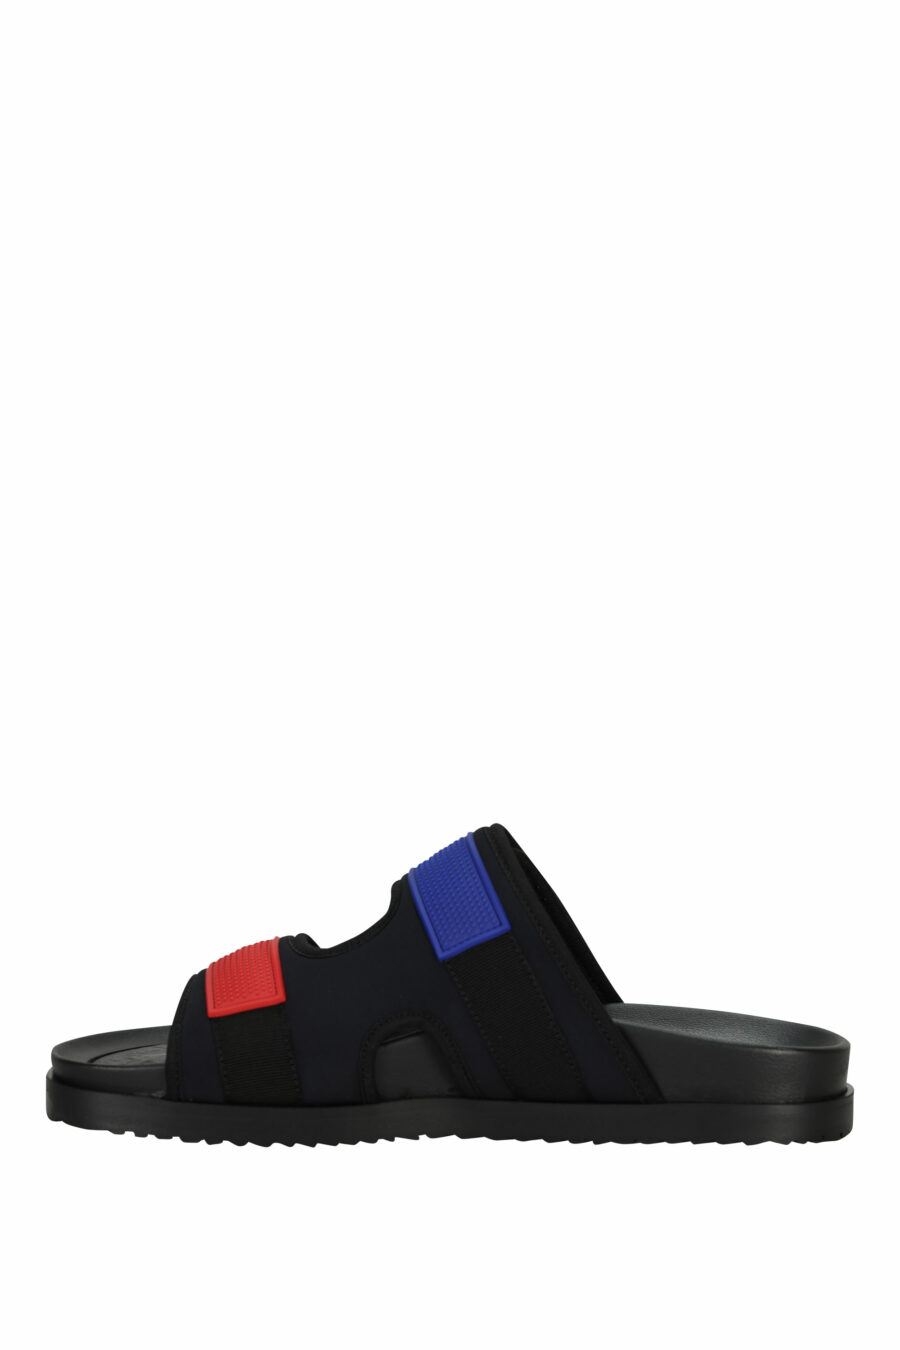 Sandalias negras con rojo y azul de velcro - 805777314715 2